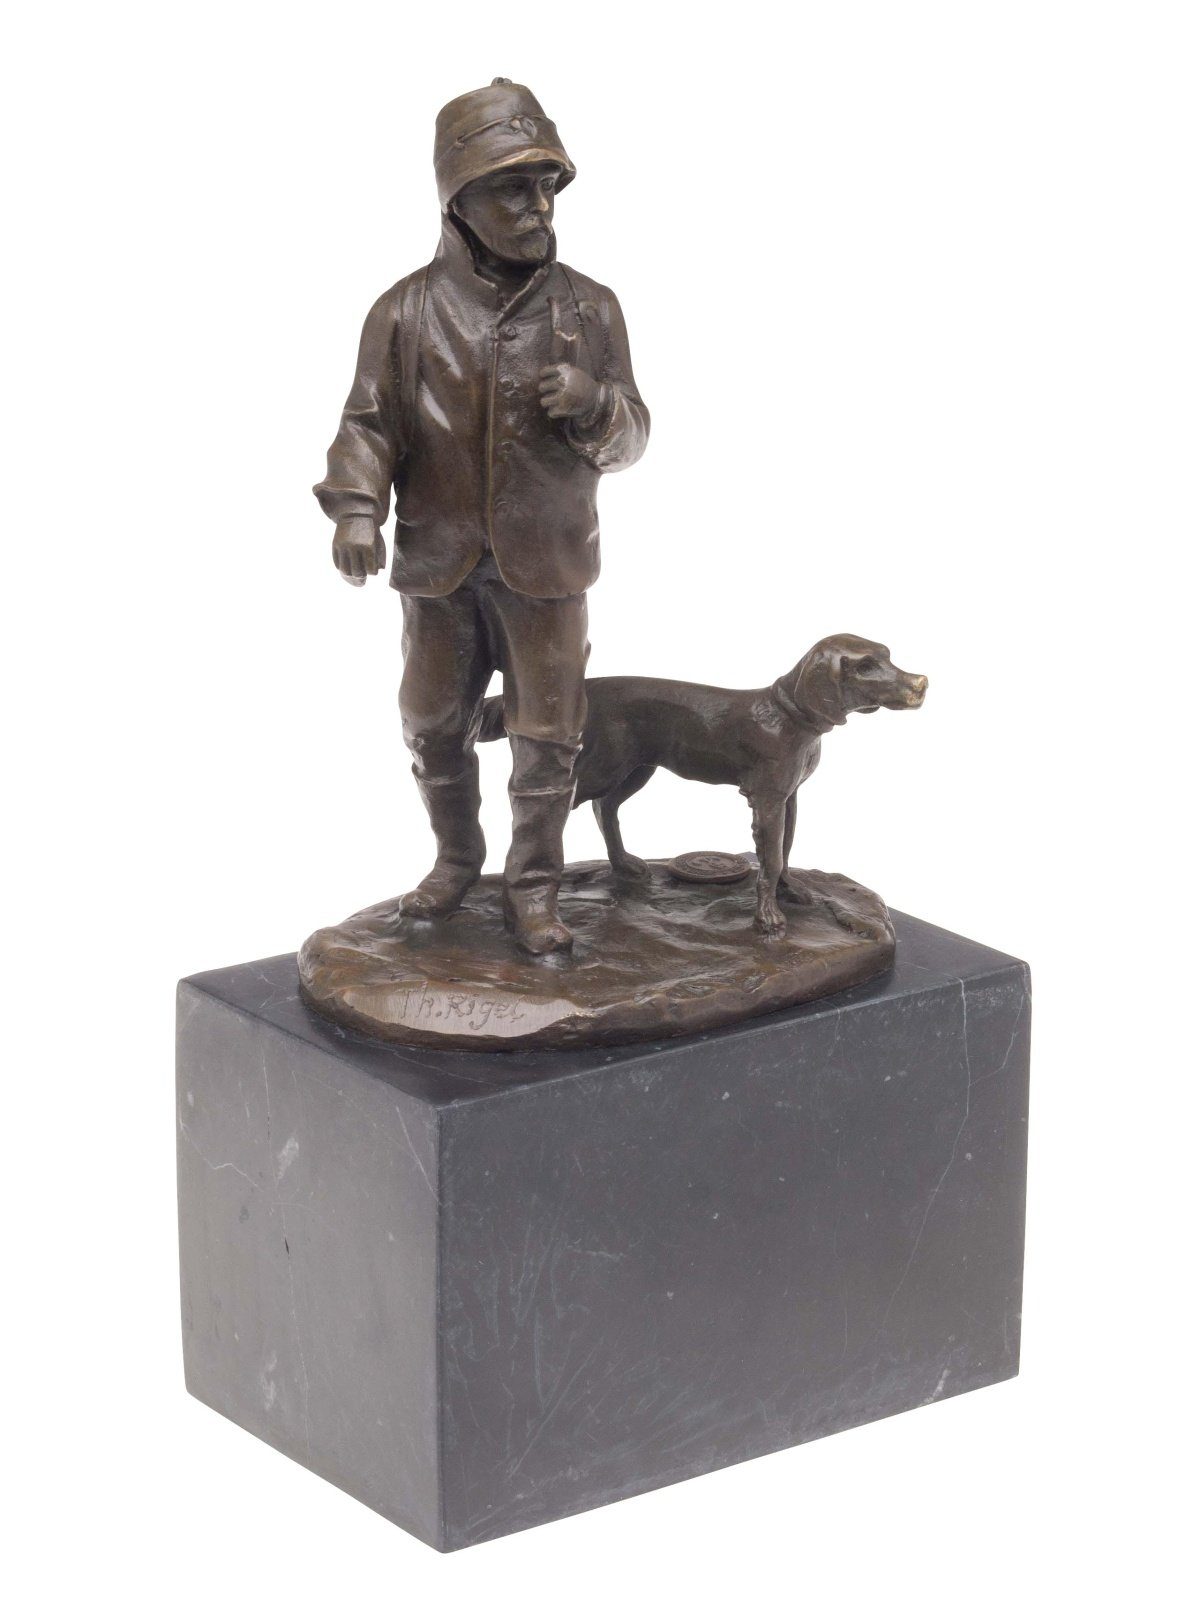 Aubaho Skulptur Bronzeskulptur Jäger Jagdhund Bronze Jagd Hund Skulptur Antik-Stil hun